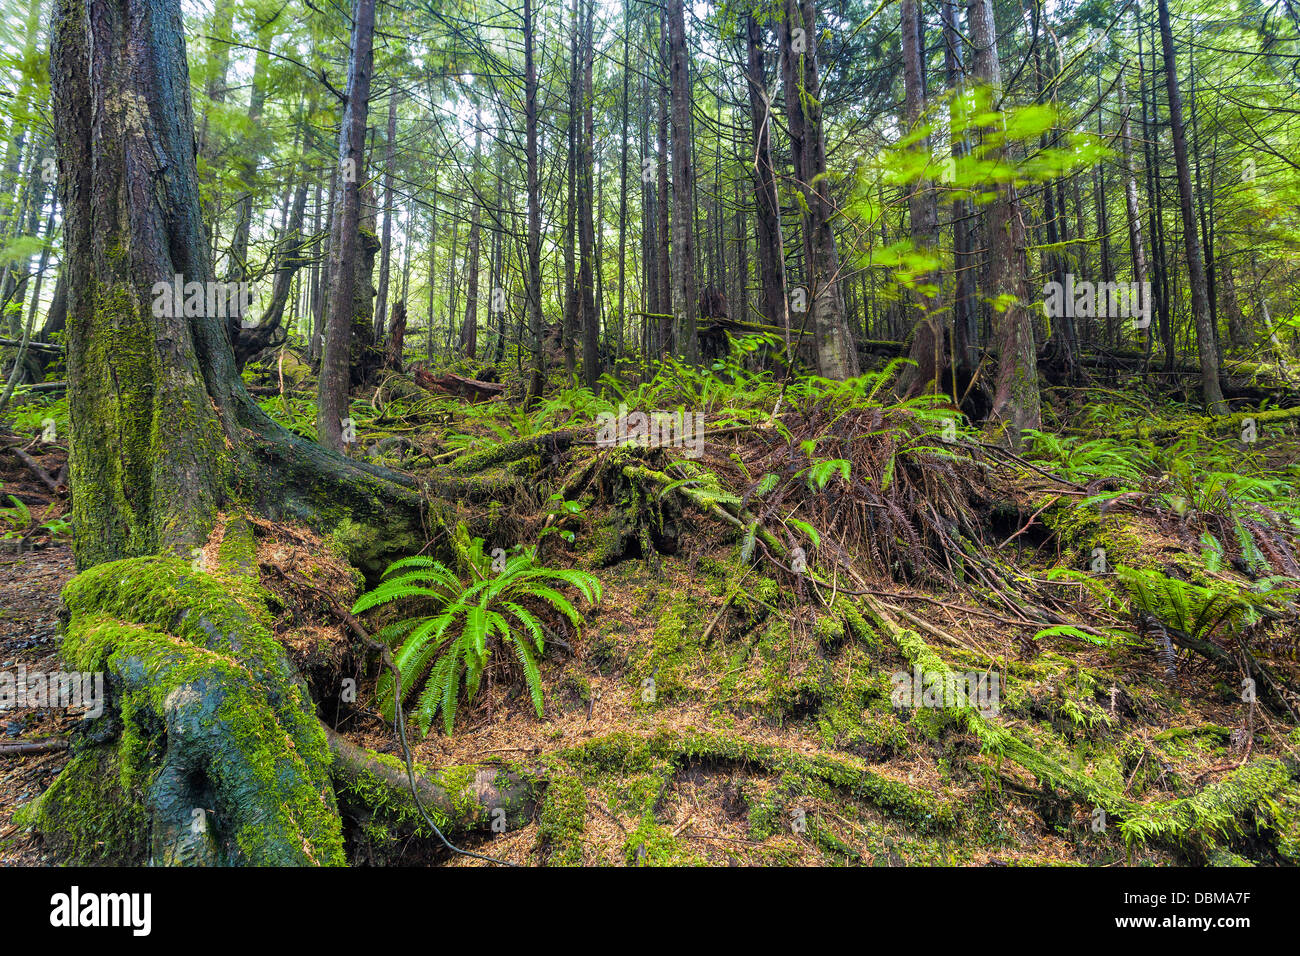 Forêt tropicale, parc national Pacific Rim, près de Ucluelet, île de Vancouver, Colombie-Britannique, Canada Banque D'Images